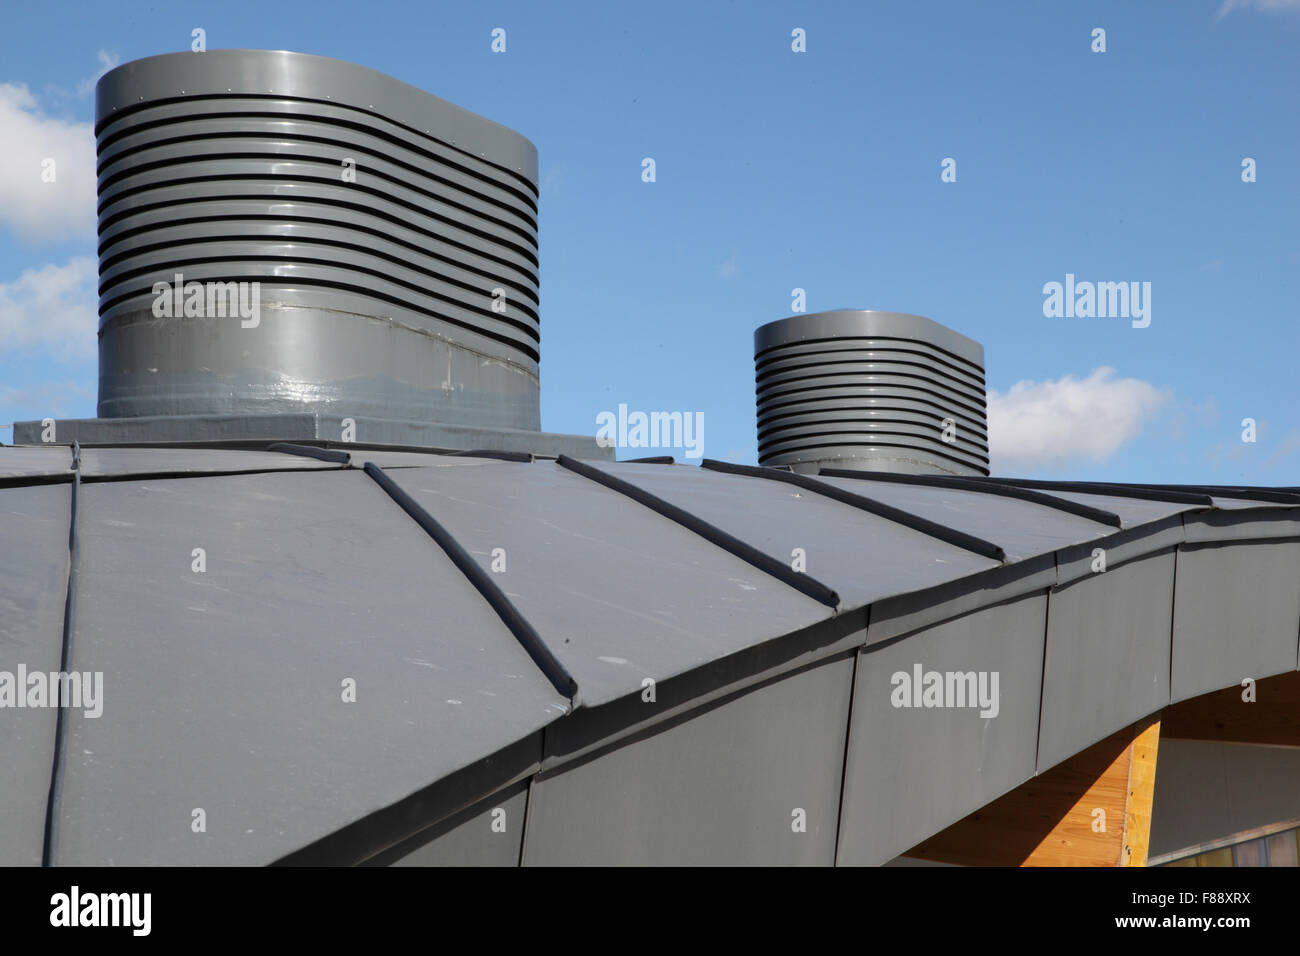 Dach-Detail auf MyPlace Jugendzentrum in Hackney, zeigen geschwungene Zink Verkleidung und Wind Fänger Lüftung Verkaufsstellen Stockfoto